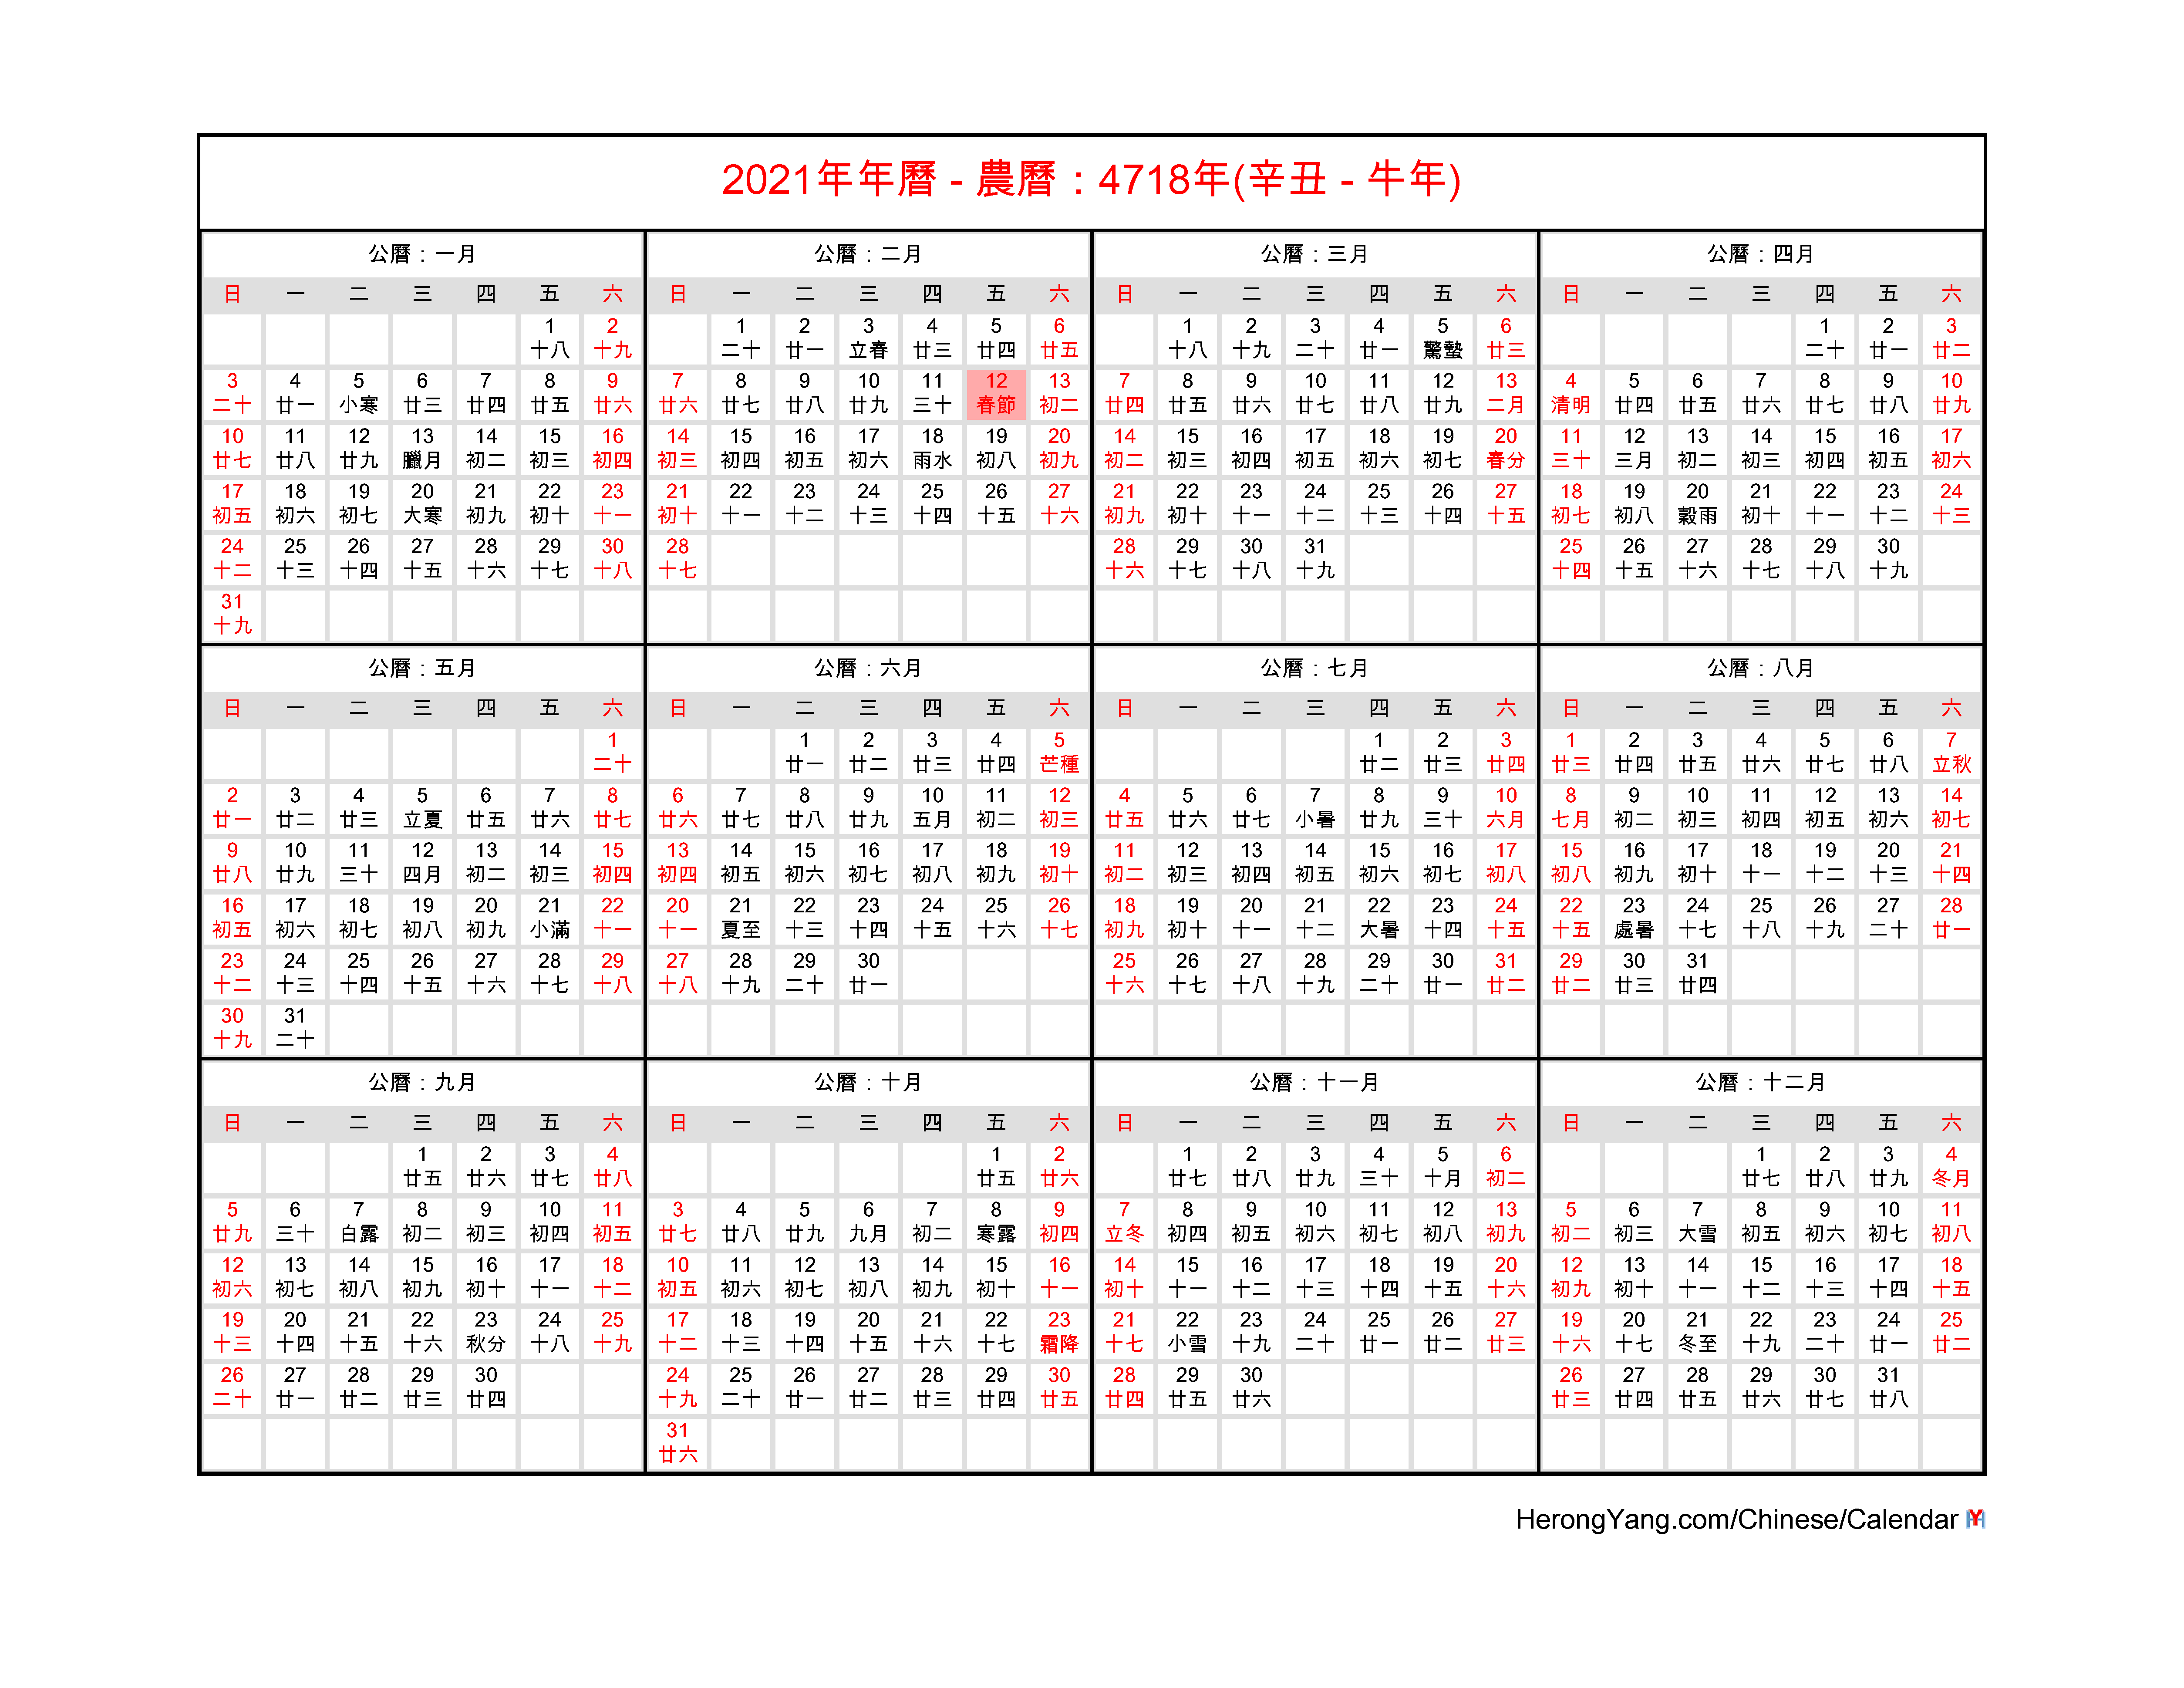 lunar calendar 2021